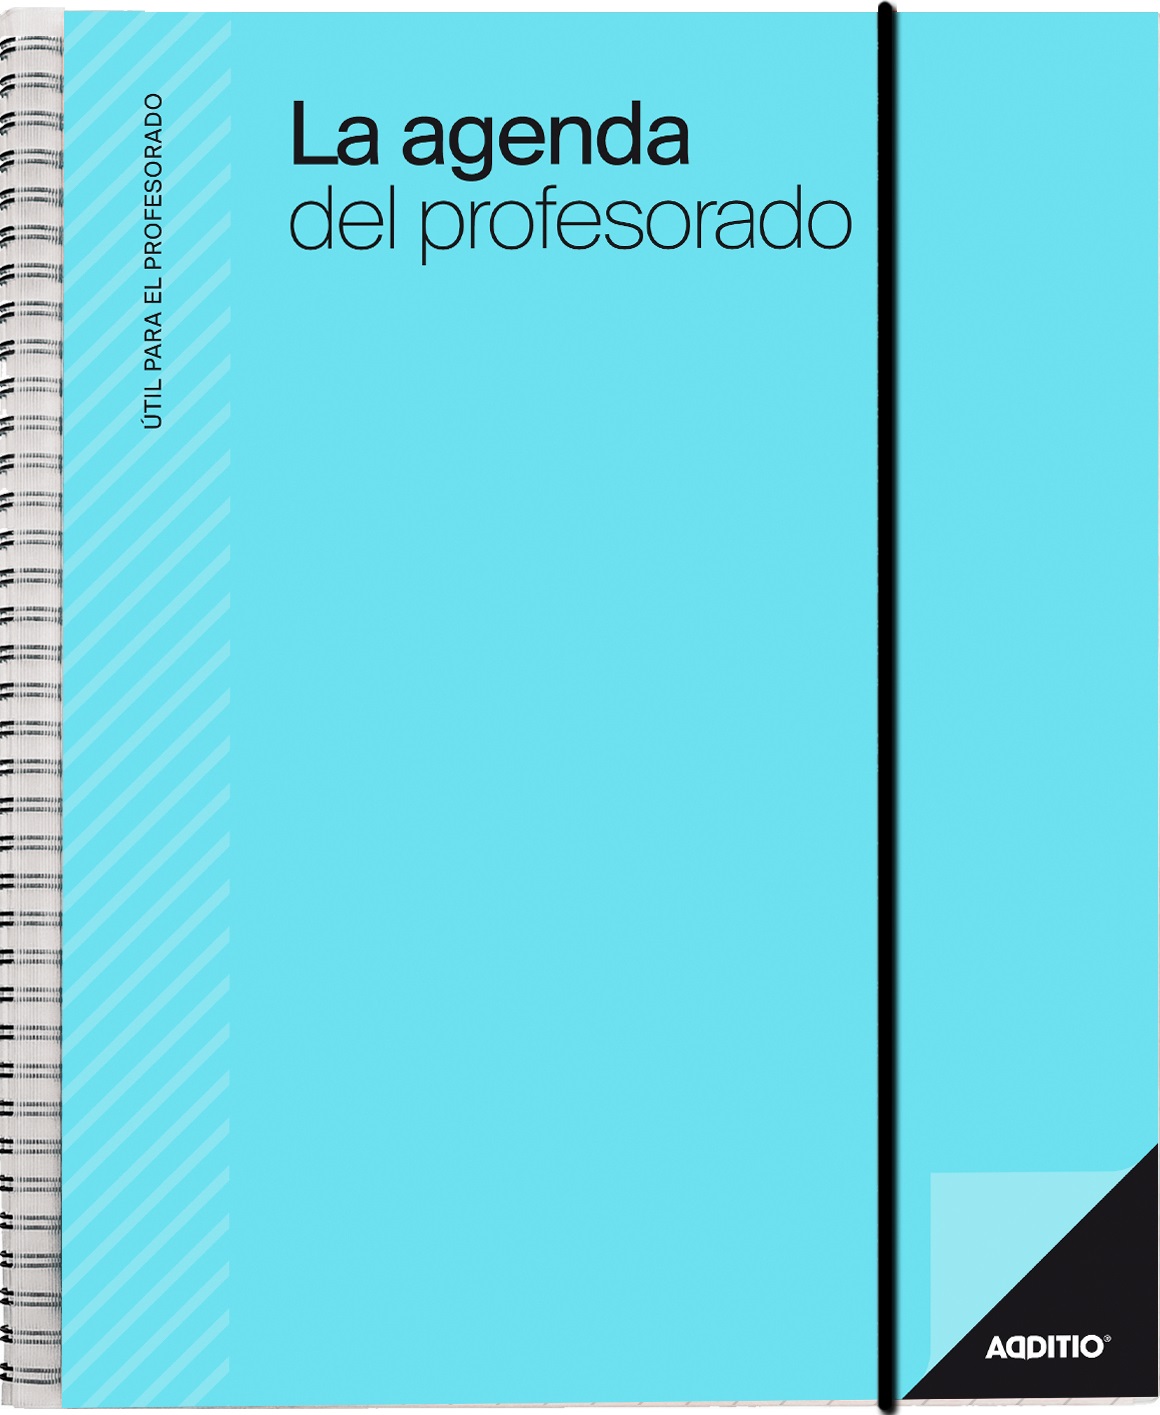 Agenda Profesorado ADDITIO 165x215 S/V P212